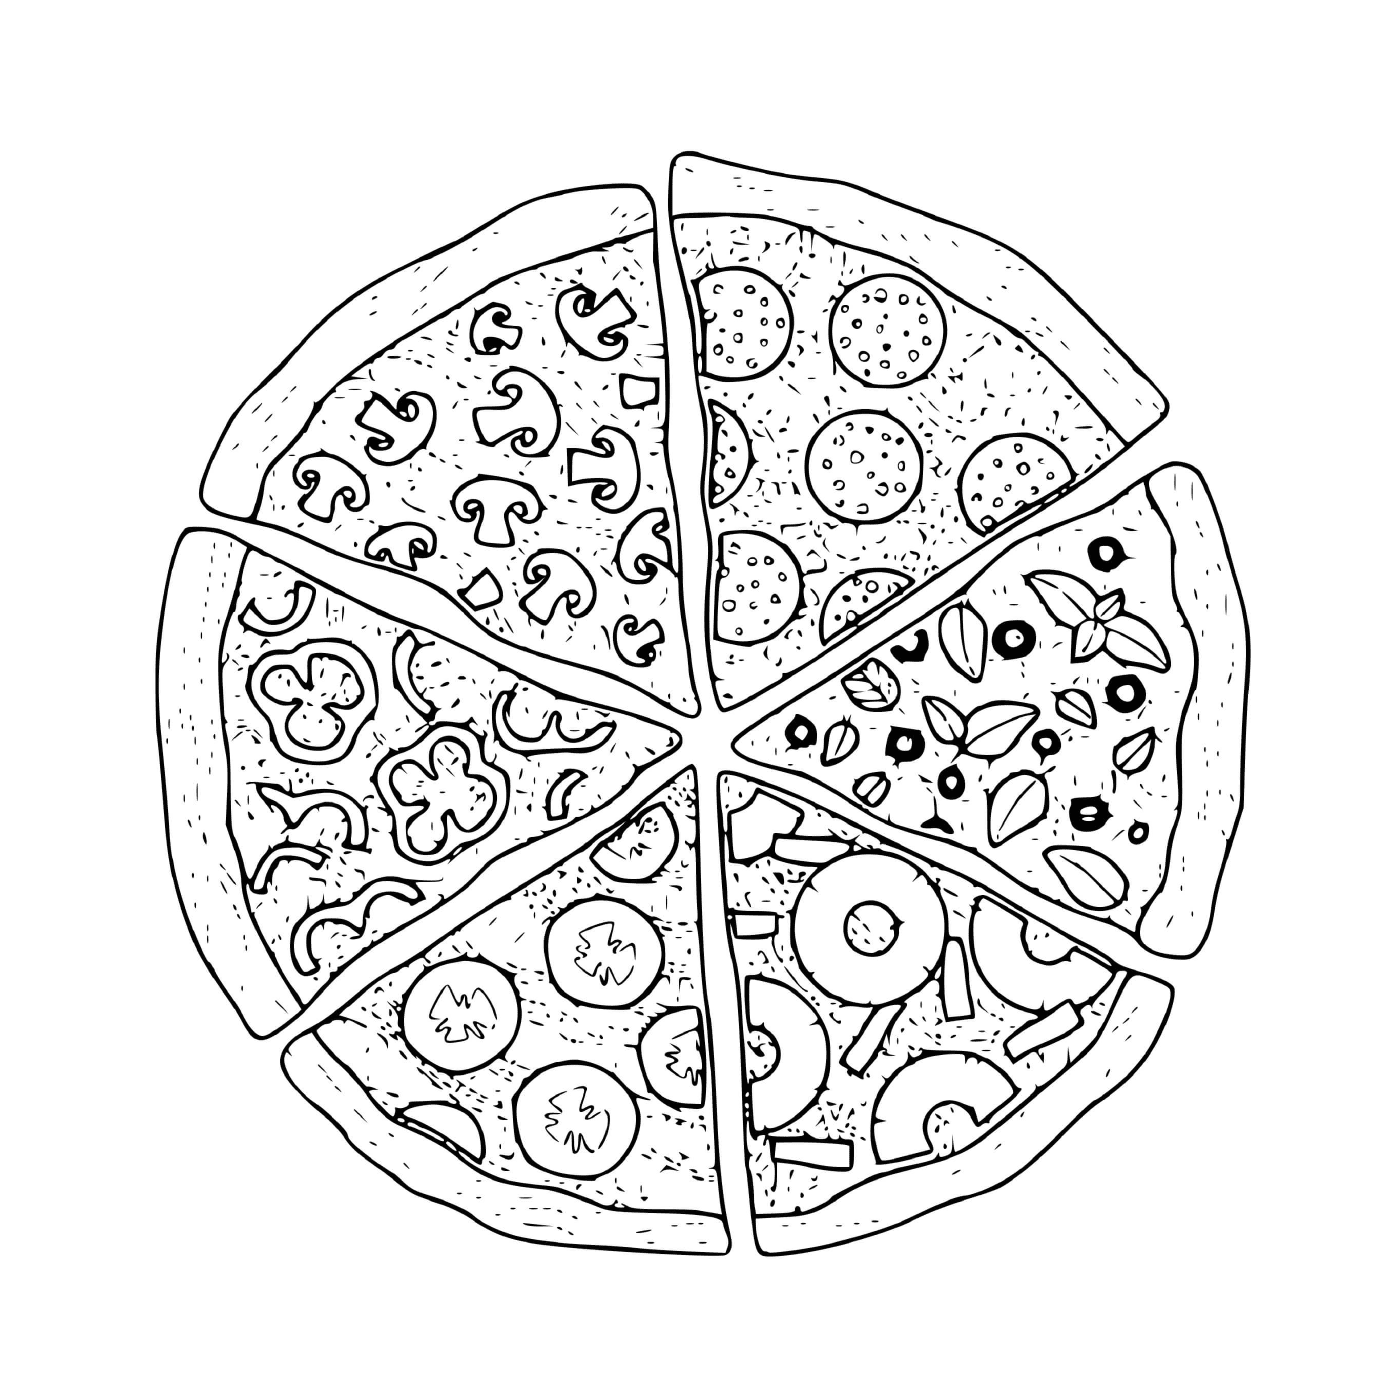  Diversi tagli di pizza 